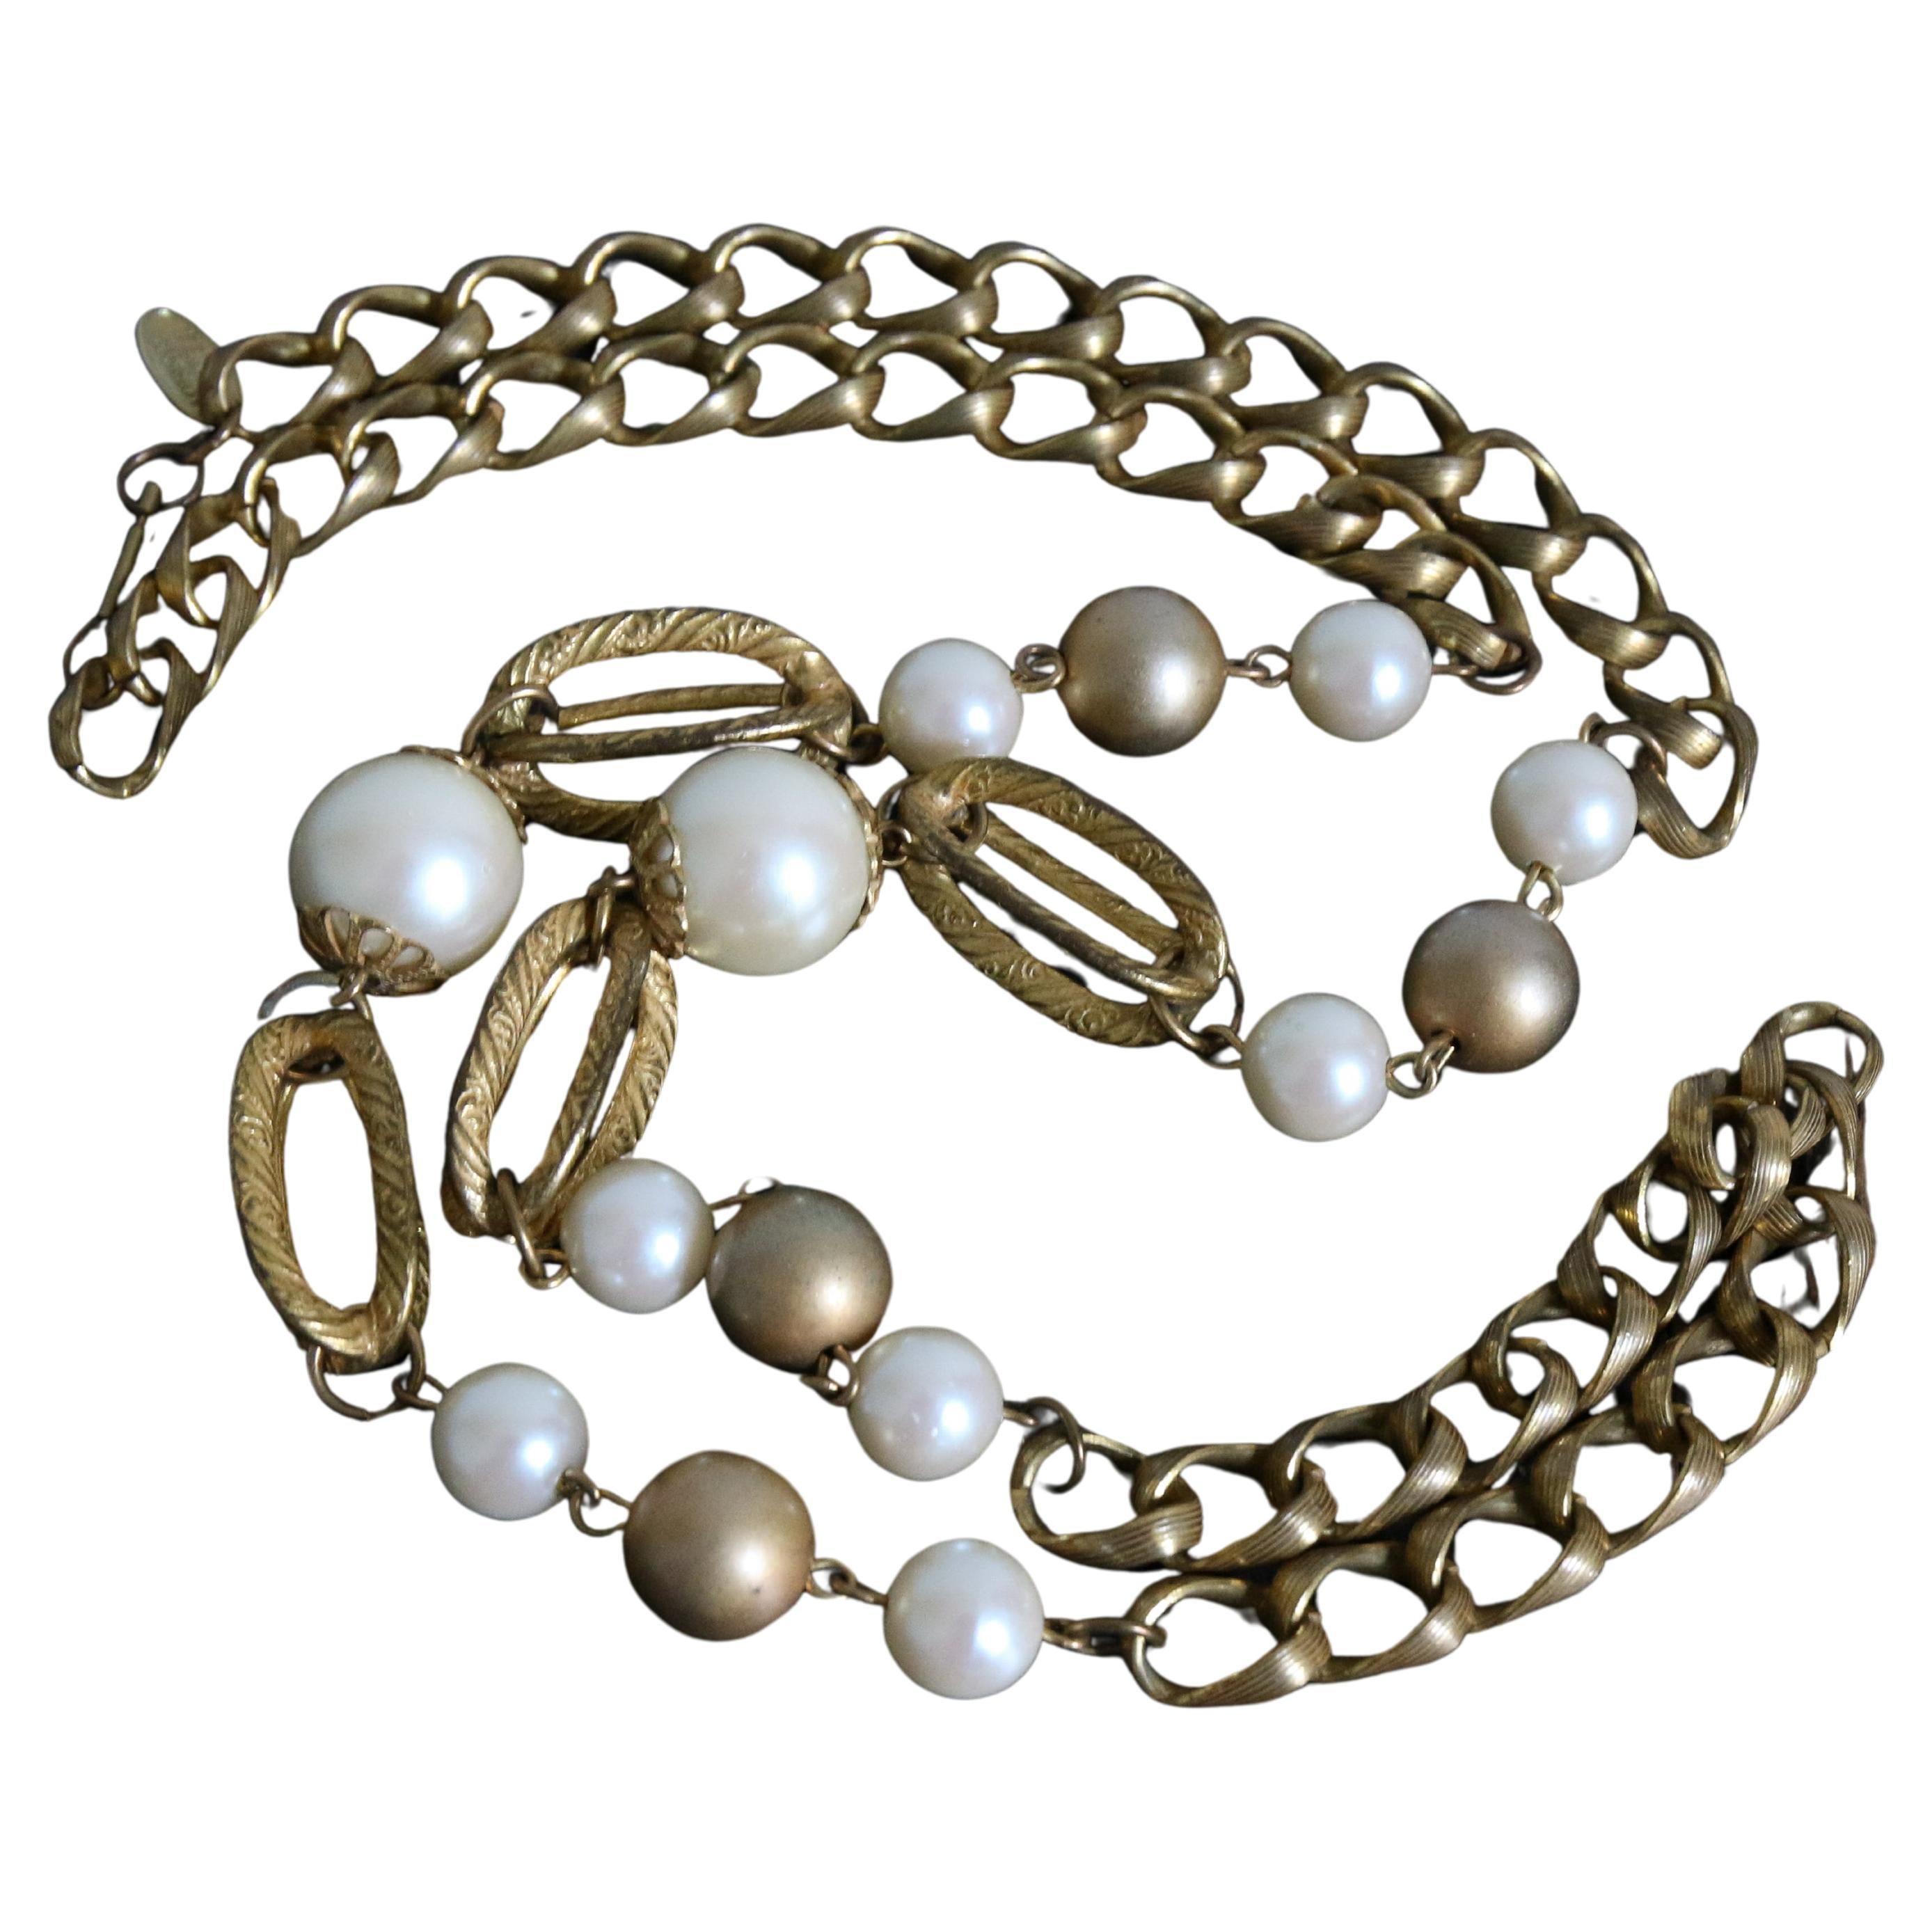 Diese atemberaubende und seltene Miriam Haskell-Halskette aus den 1960er Jahren besteht aus einem einzigen goldfarbenen Metallkettenstrang mit weiß und goldfarben schimmernden Perlen als Statement-Glieder, die dekorative, käfigartige, röhrenförmige